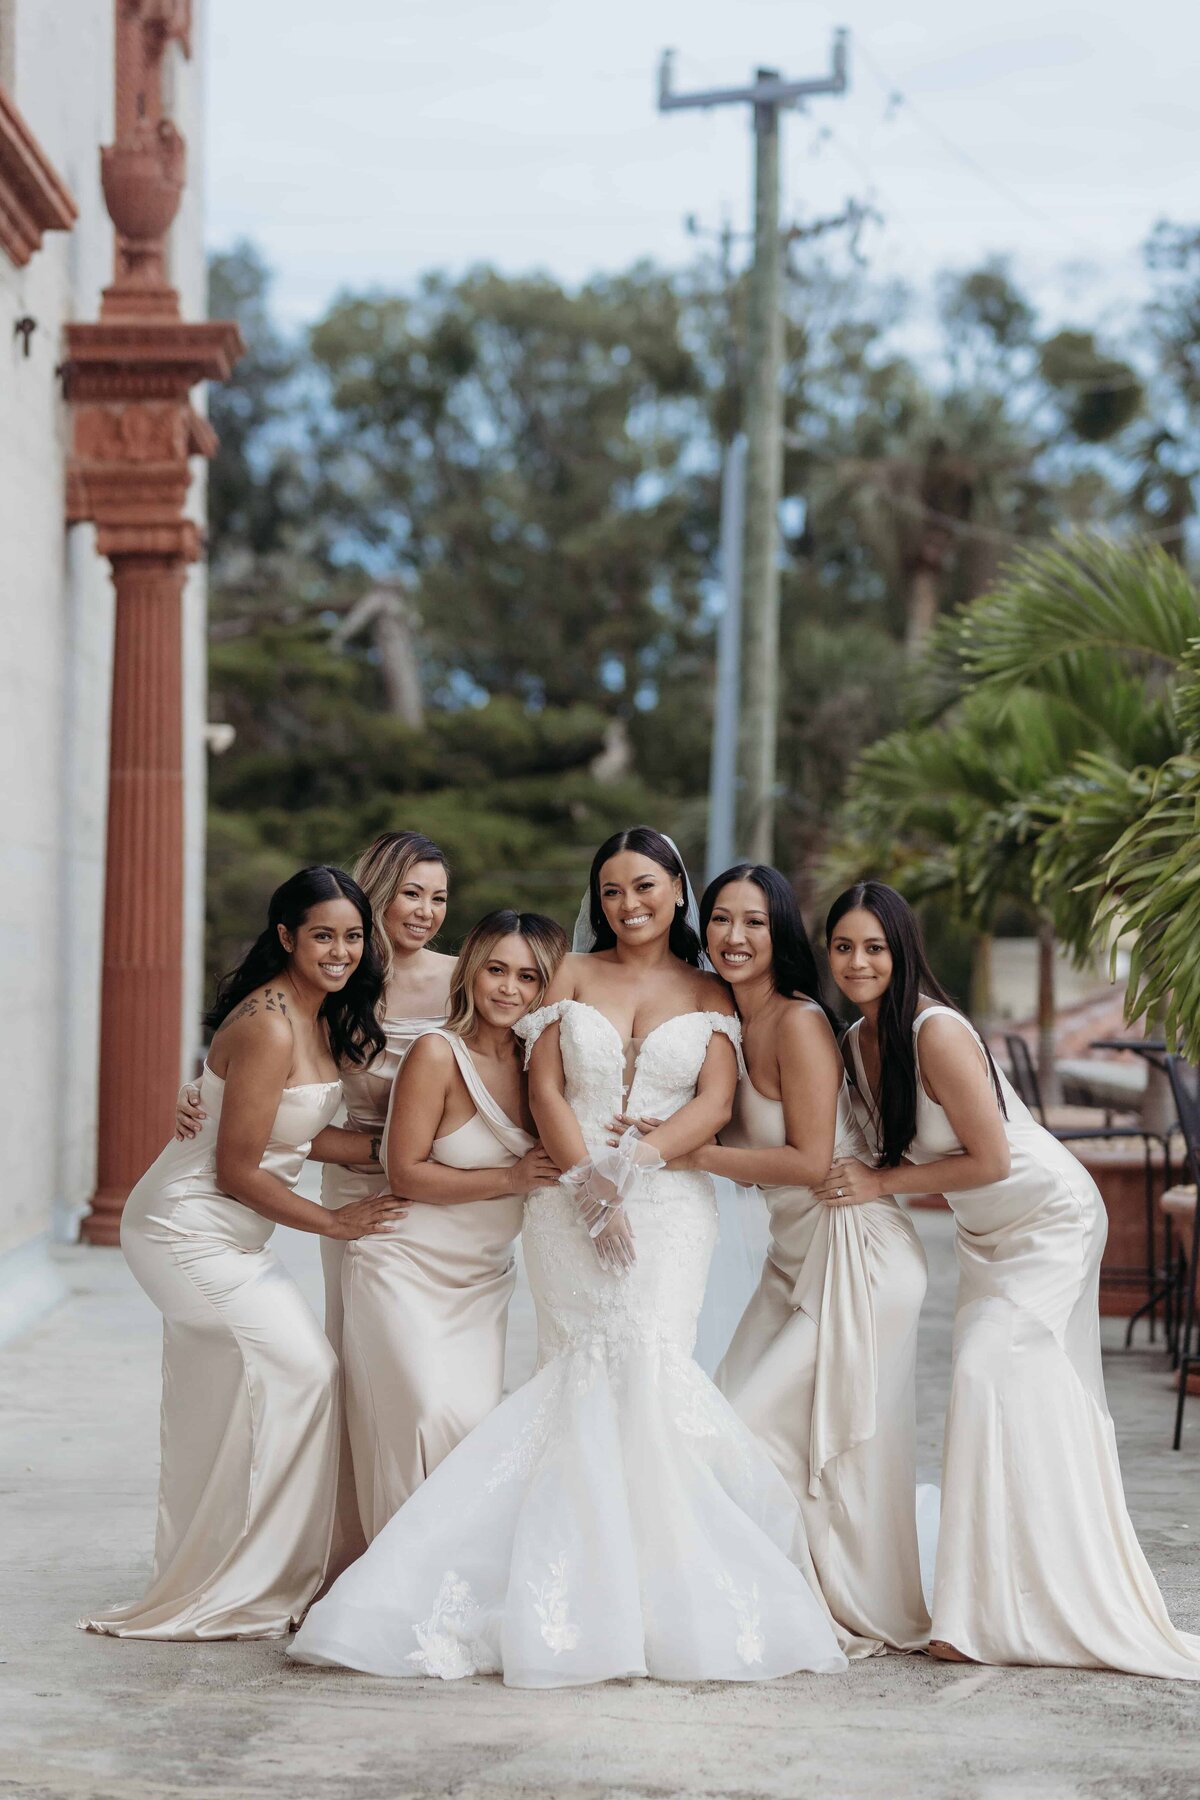 Bridal Party Photos | The Lightner Museum Wedding | Wedding Photographers St Augustine - Phavy Photography